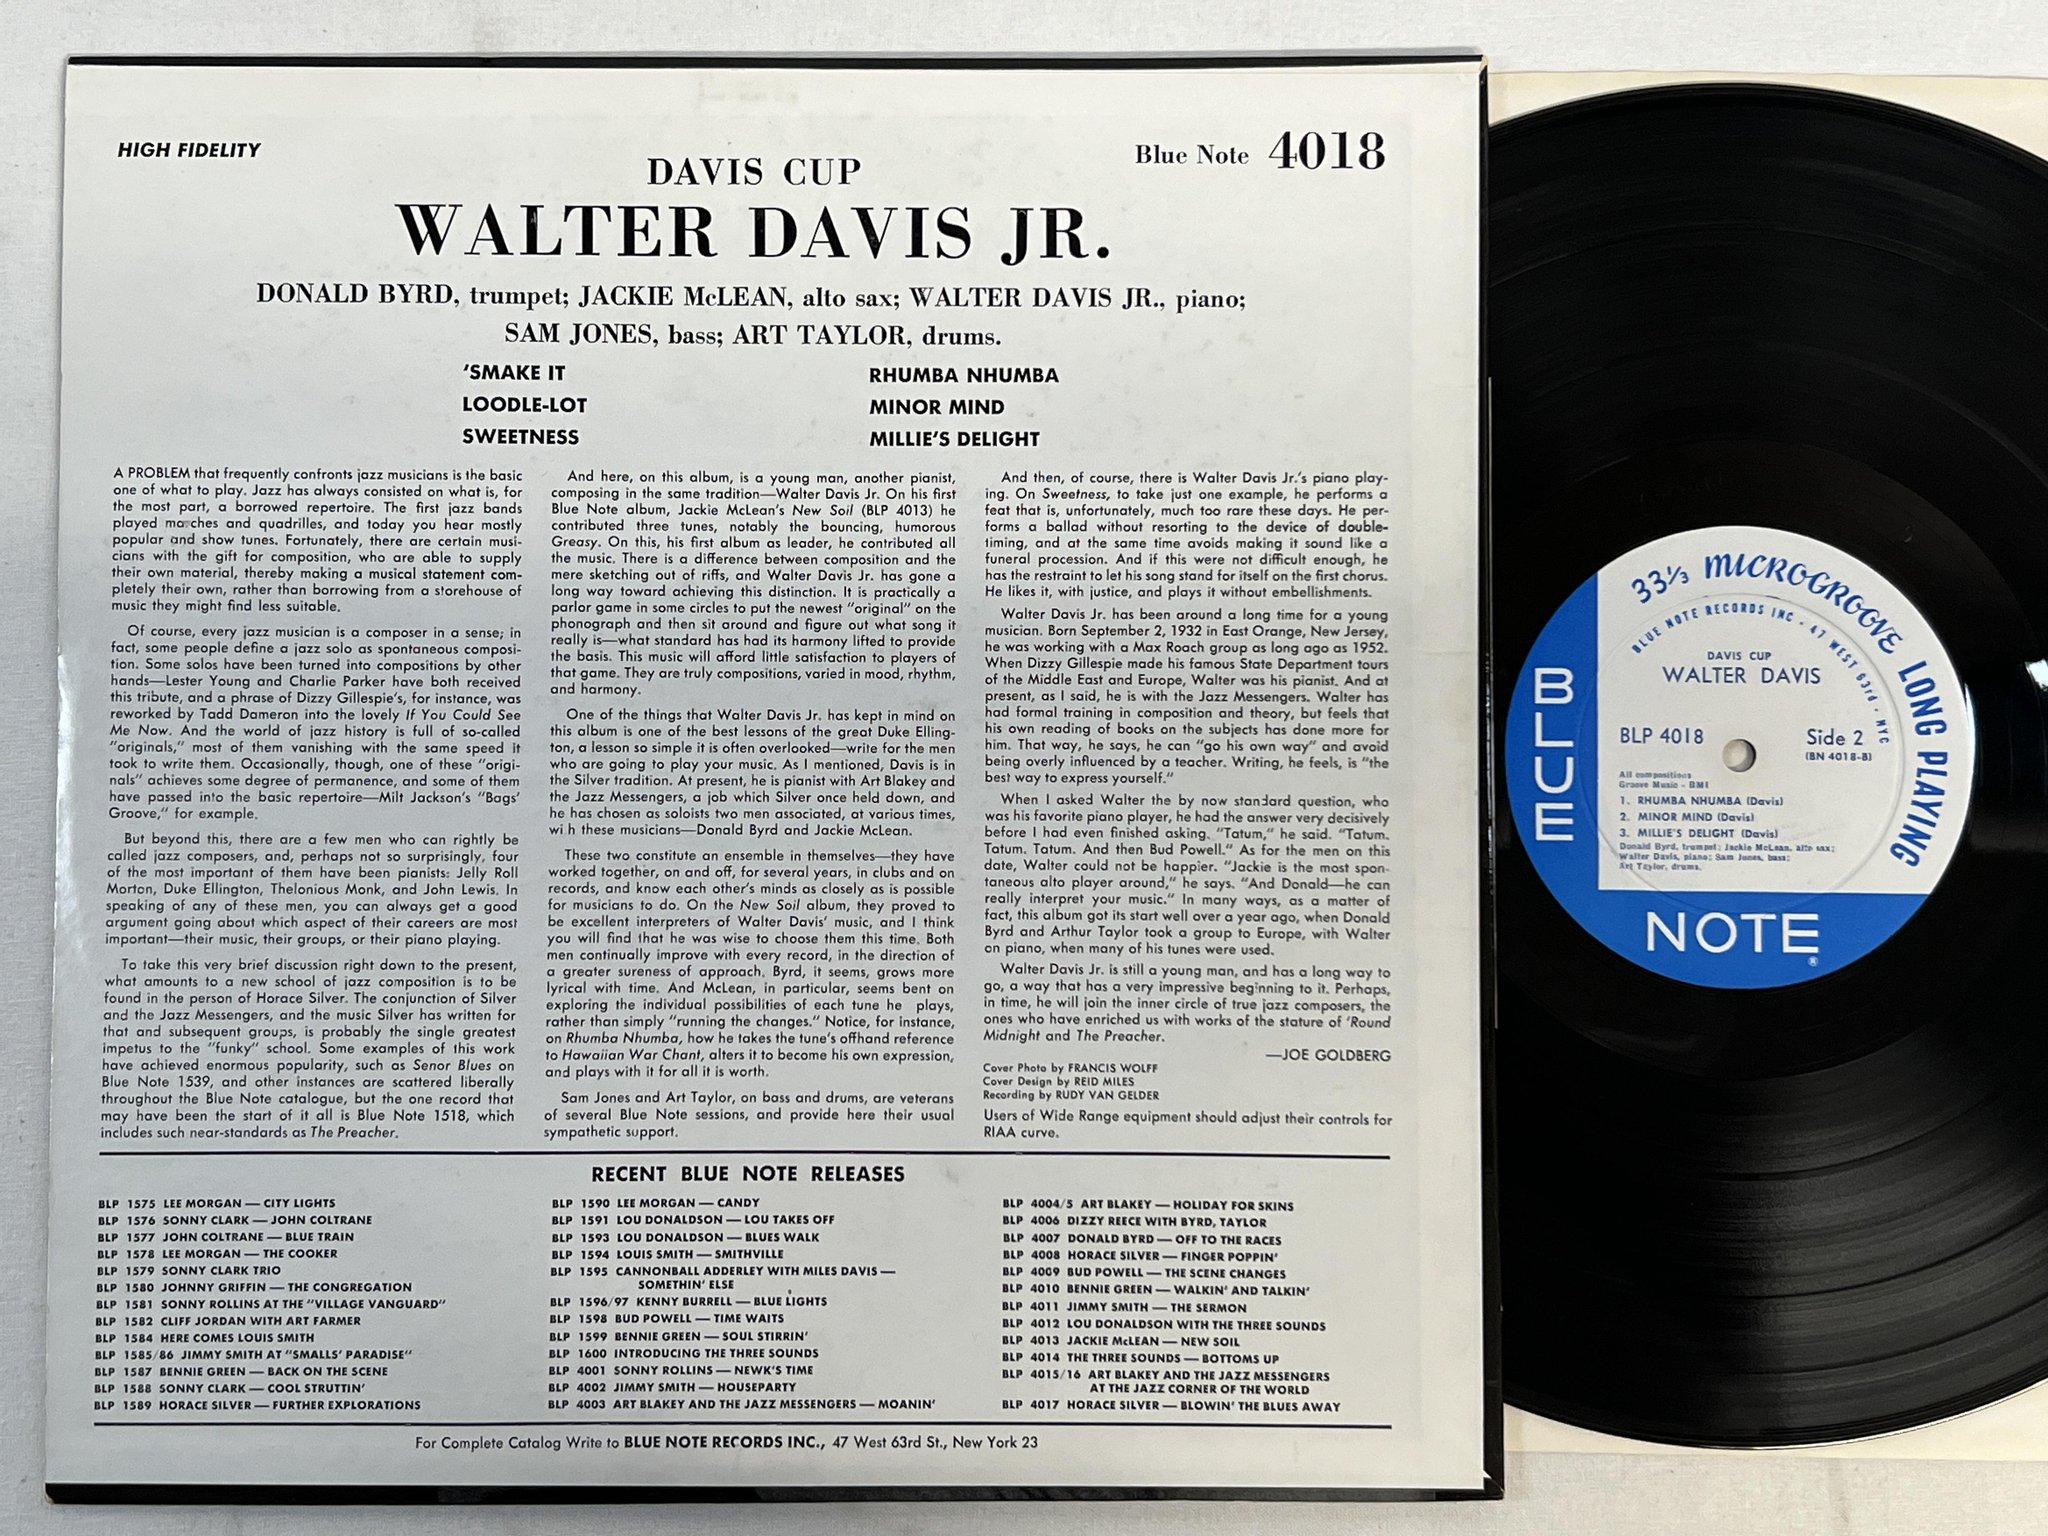 Omslagsbild för skivan WALTER DAVIS Davis Cup LP -59 US BLUE NOTE BLP 4018 ** mega rare original **